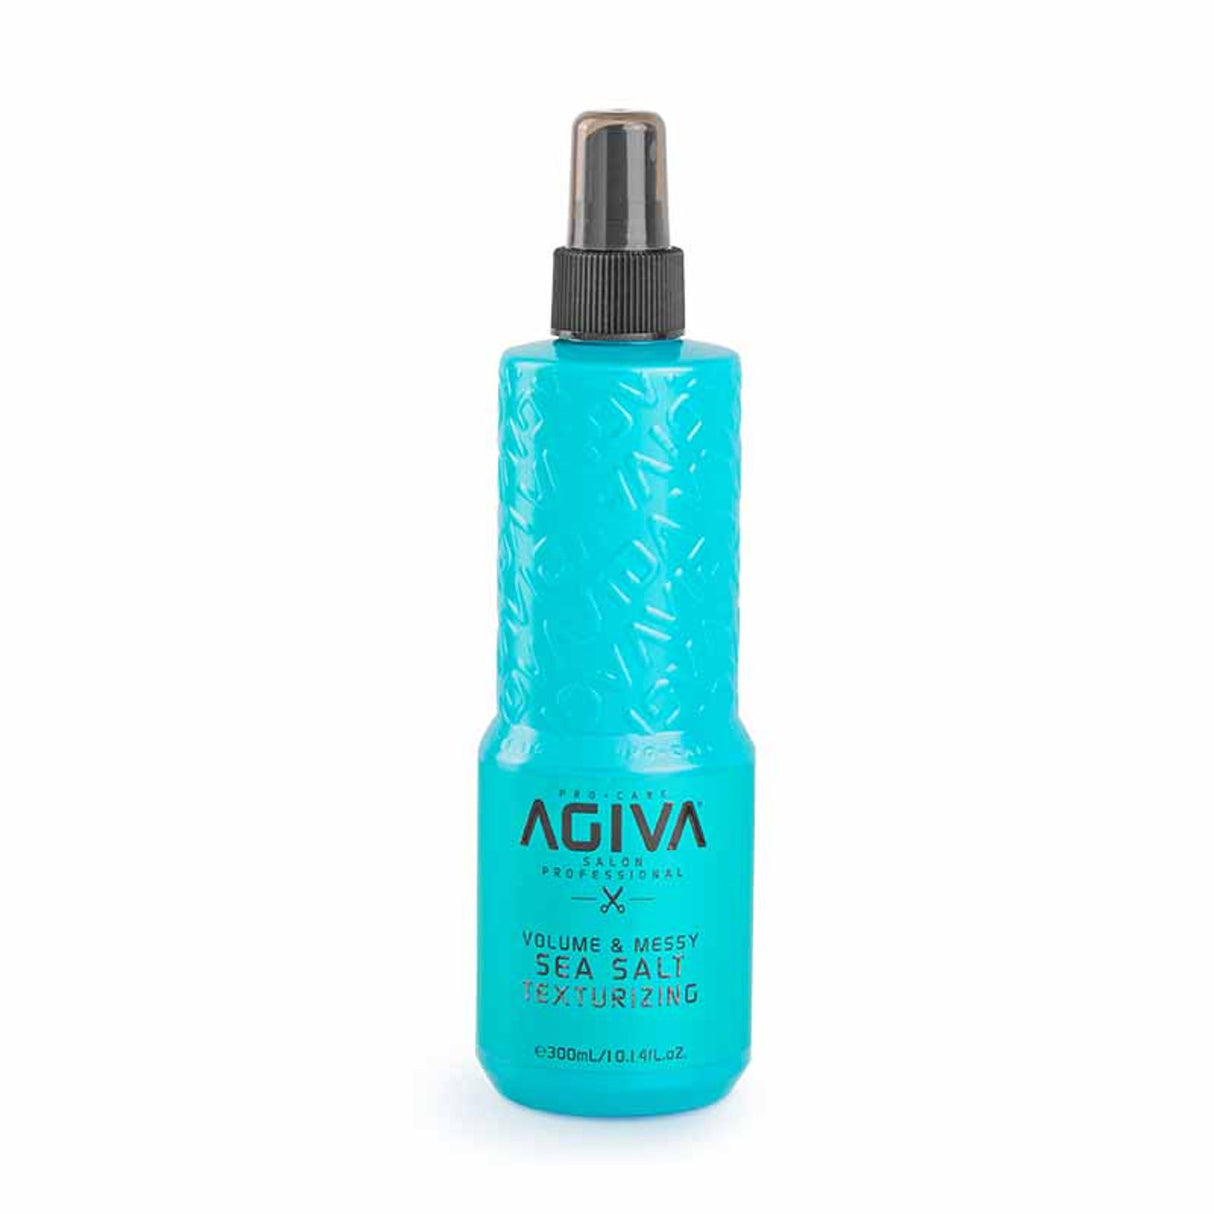 Agiva Sea Salt Texturizing Spray 300 mL